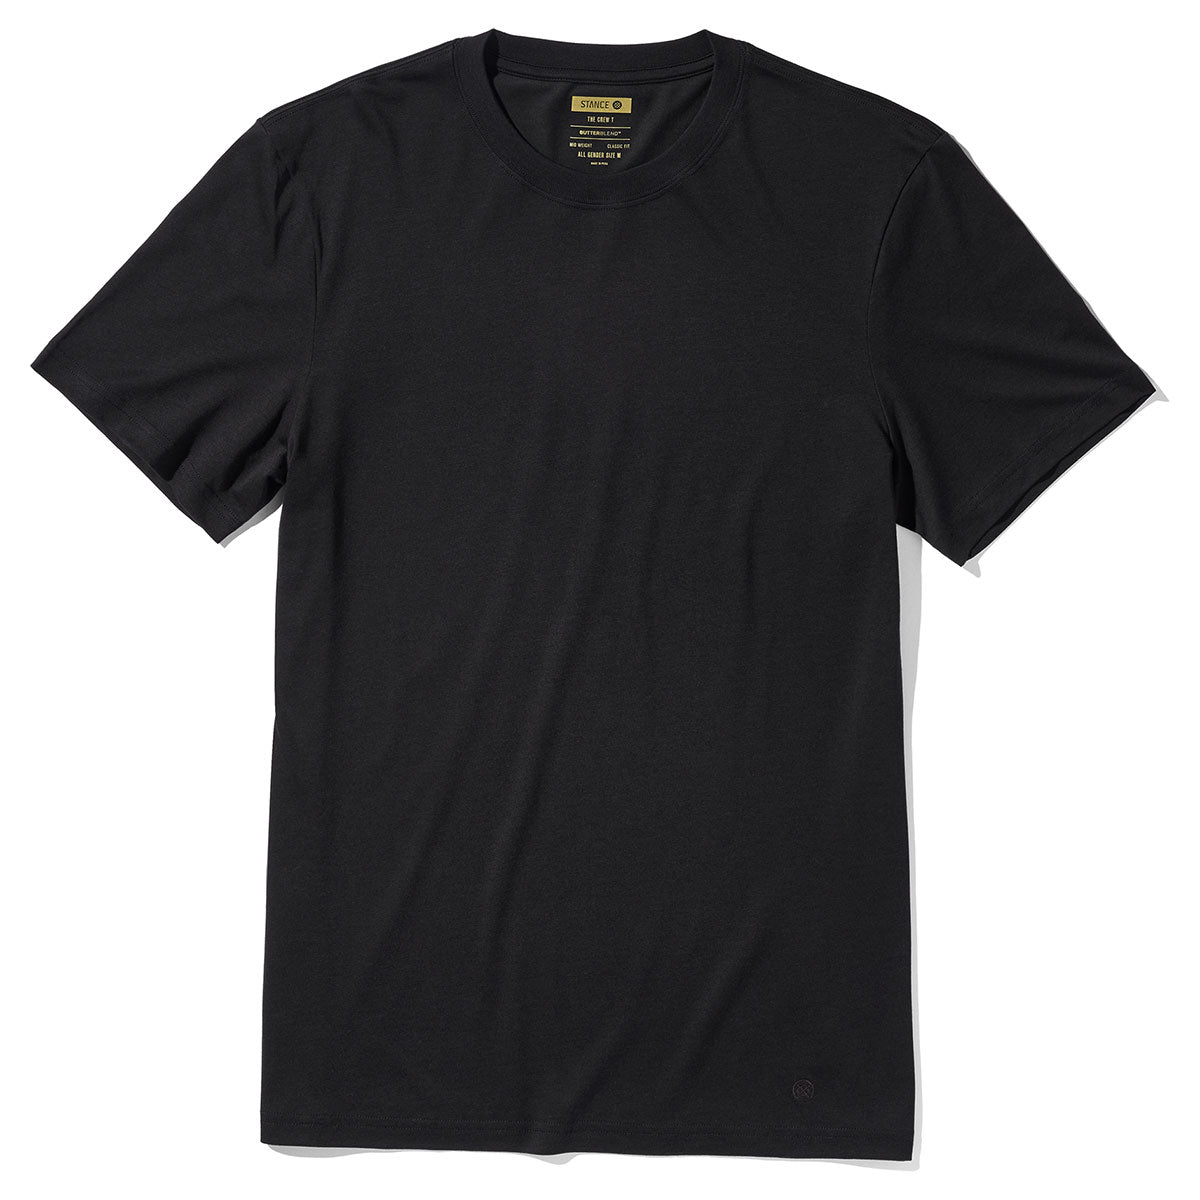 Stance Butter Blend T-Shirt - Black image 1